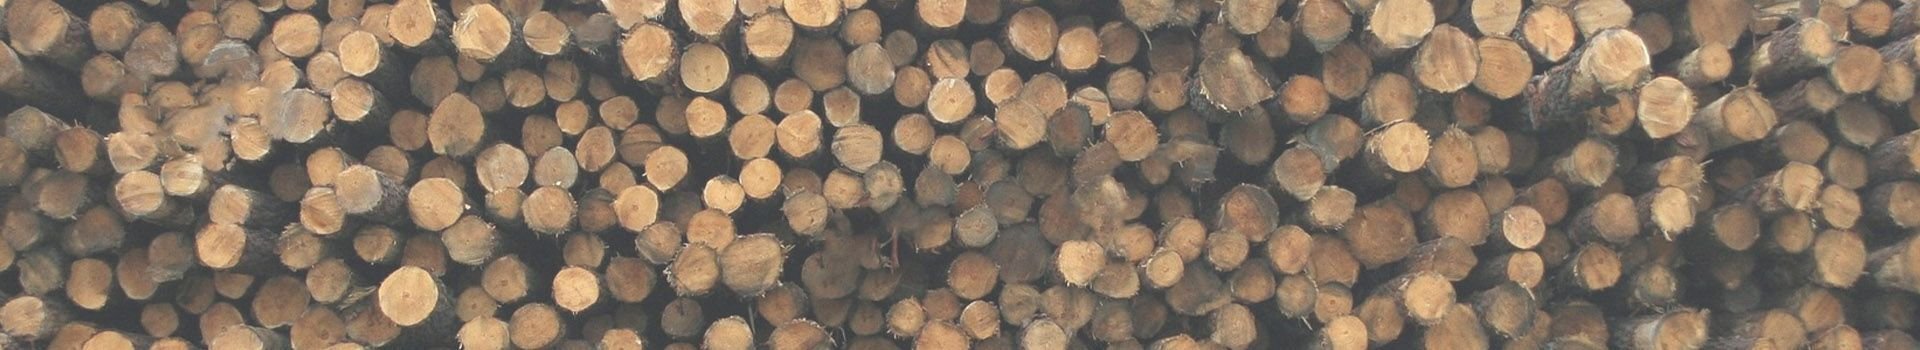 Ketten für die Holzindustrie Holzstämme